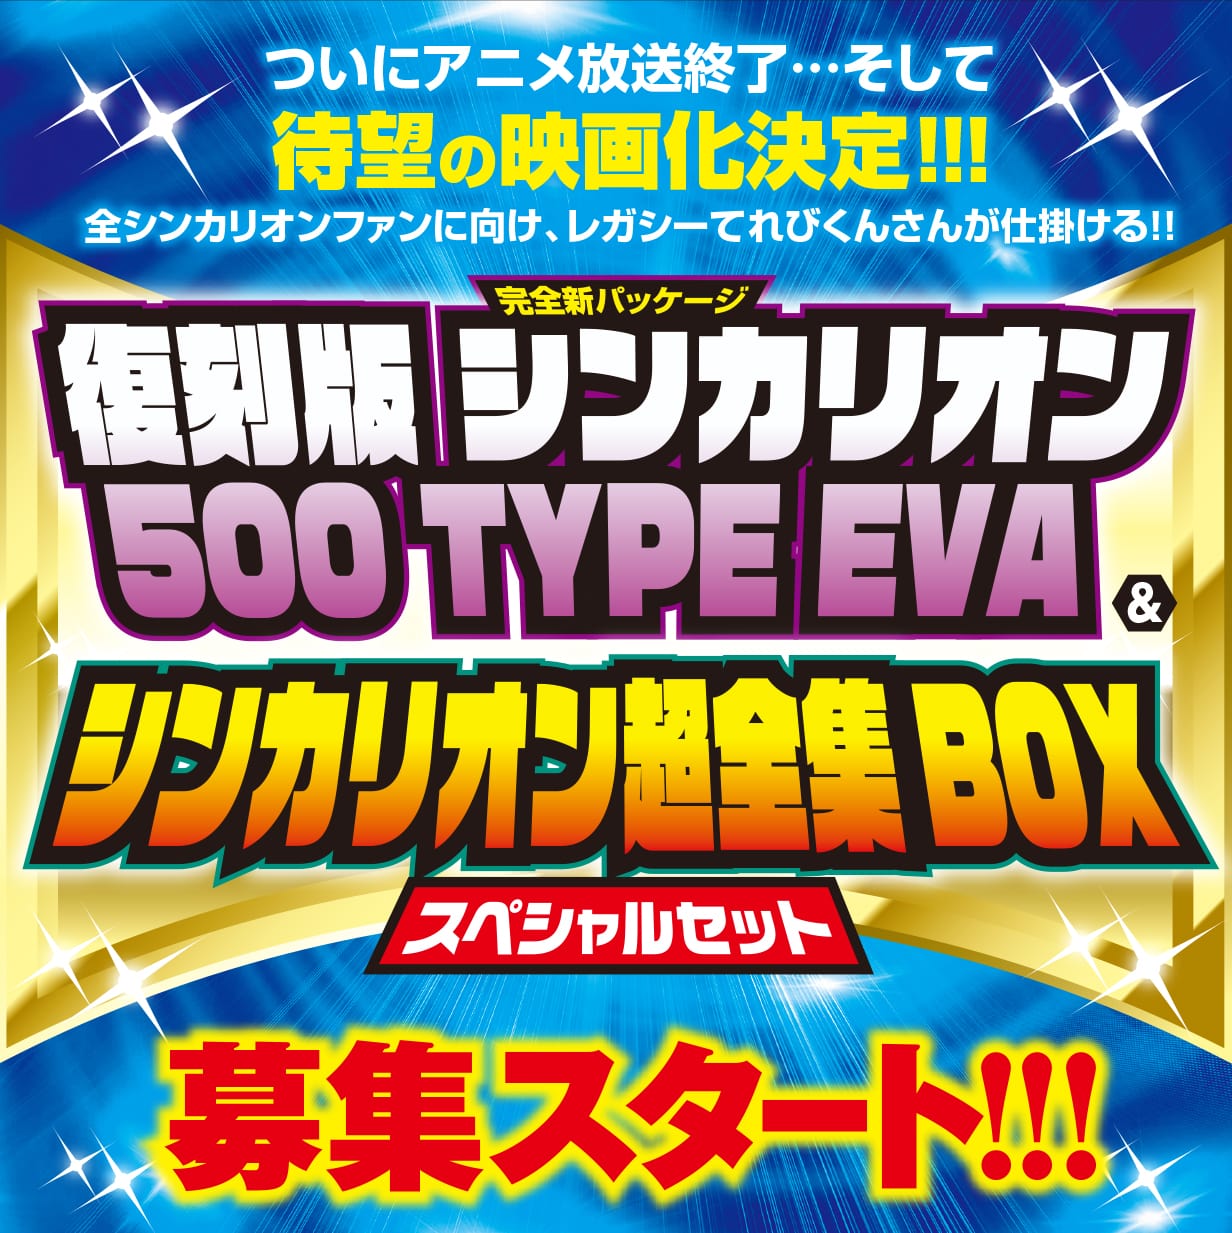 復刻版 シンカリオン500 TYPE EVA＆シンカリオン超全集BOX スペシャル 